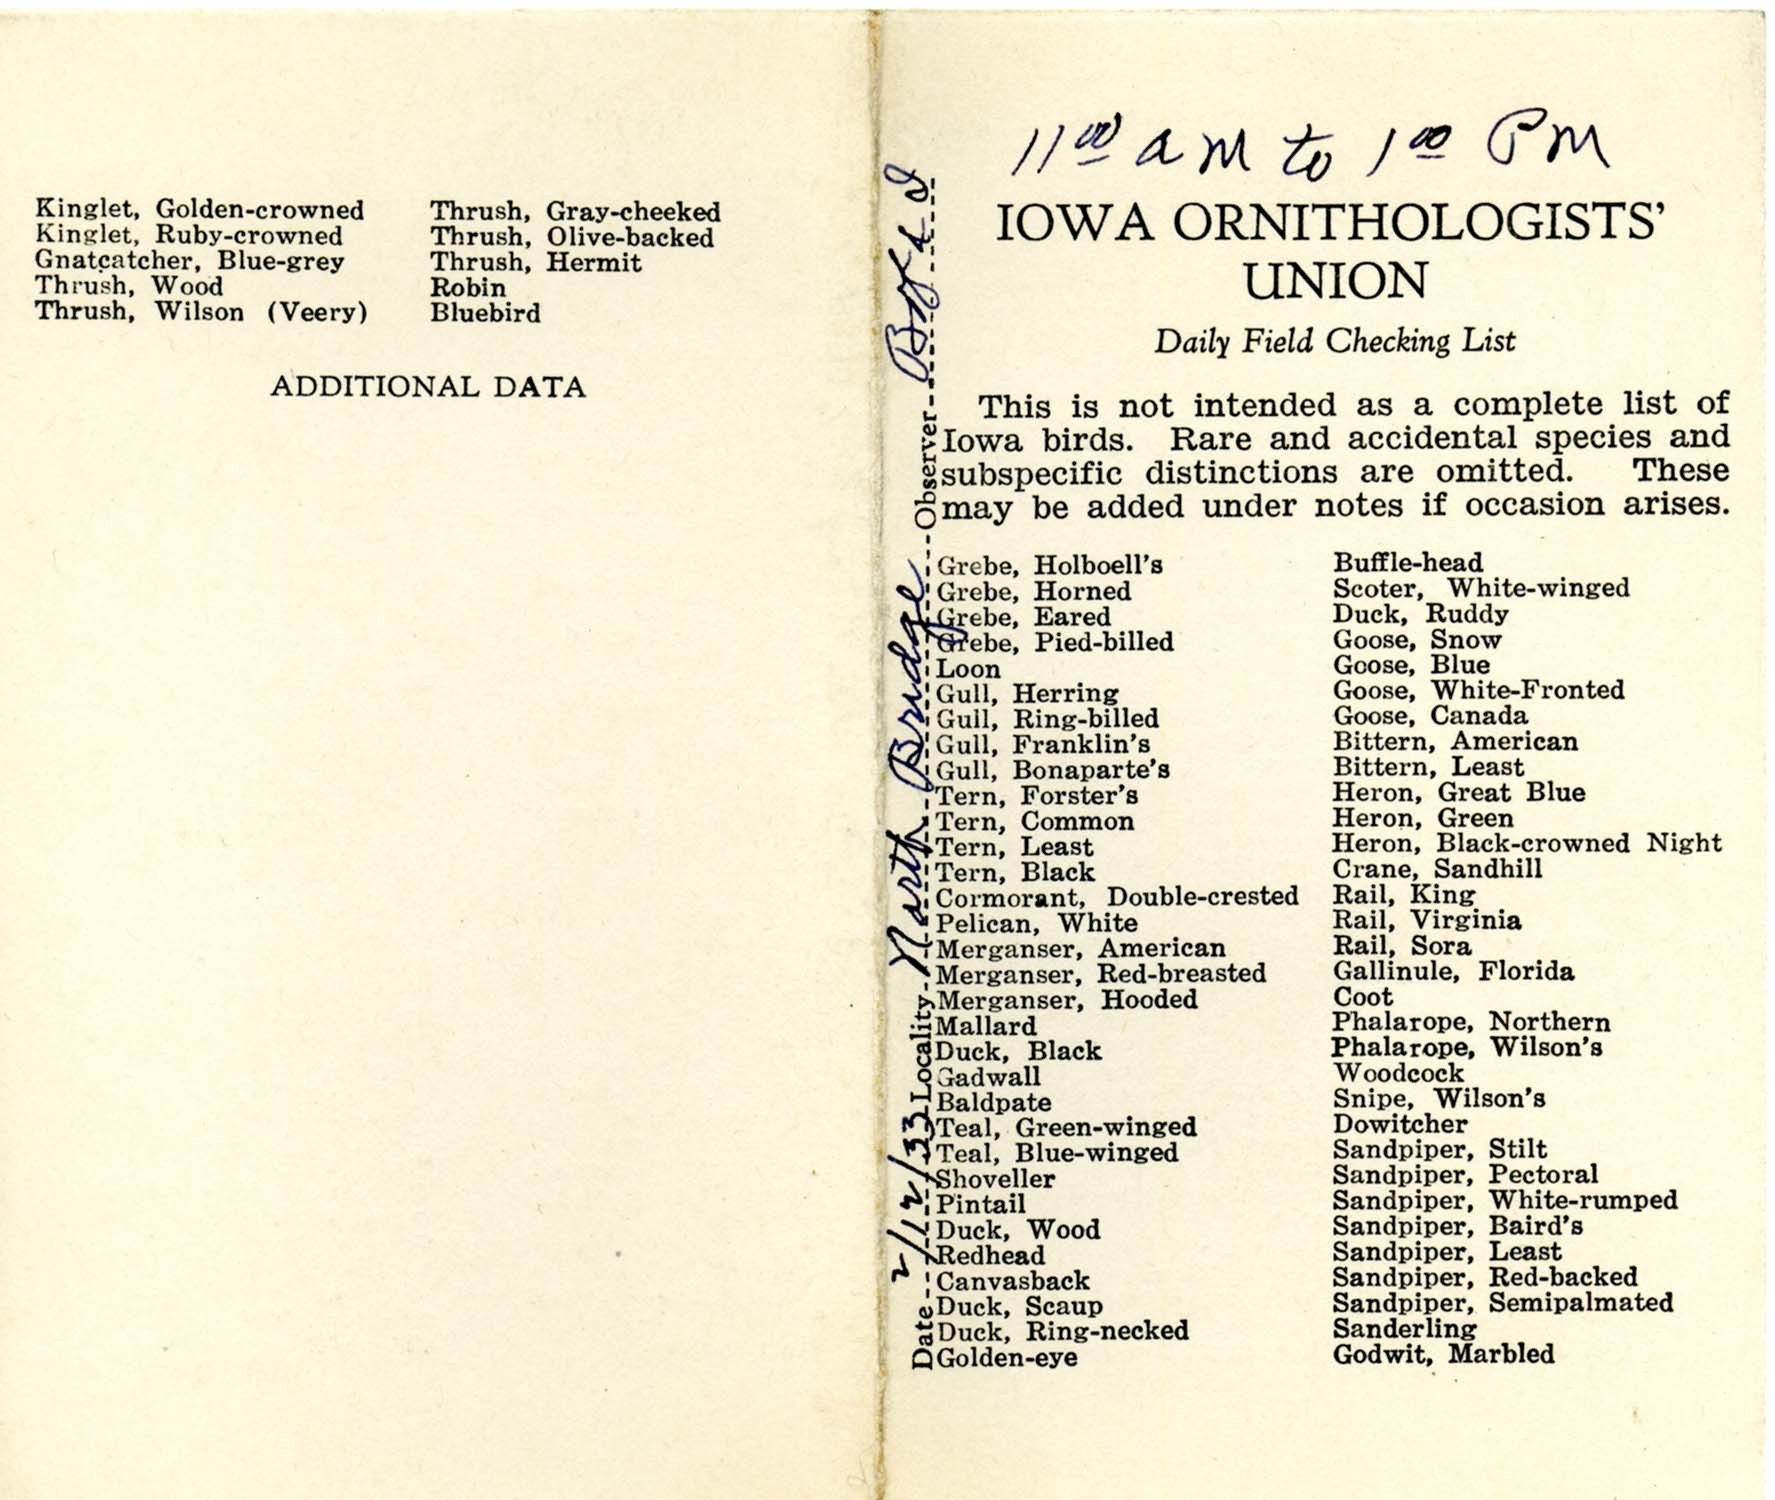 Daily field checking list, Walter Rosene, February 12, 1933